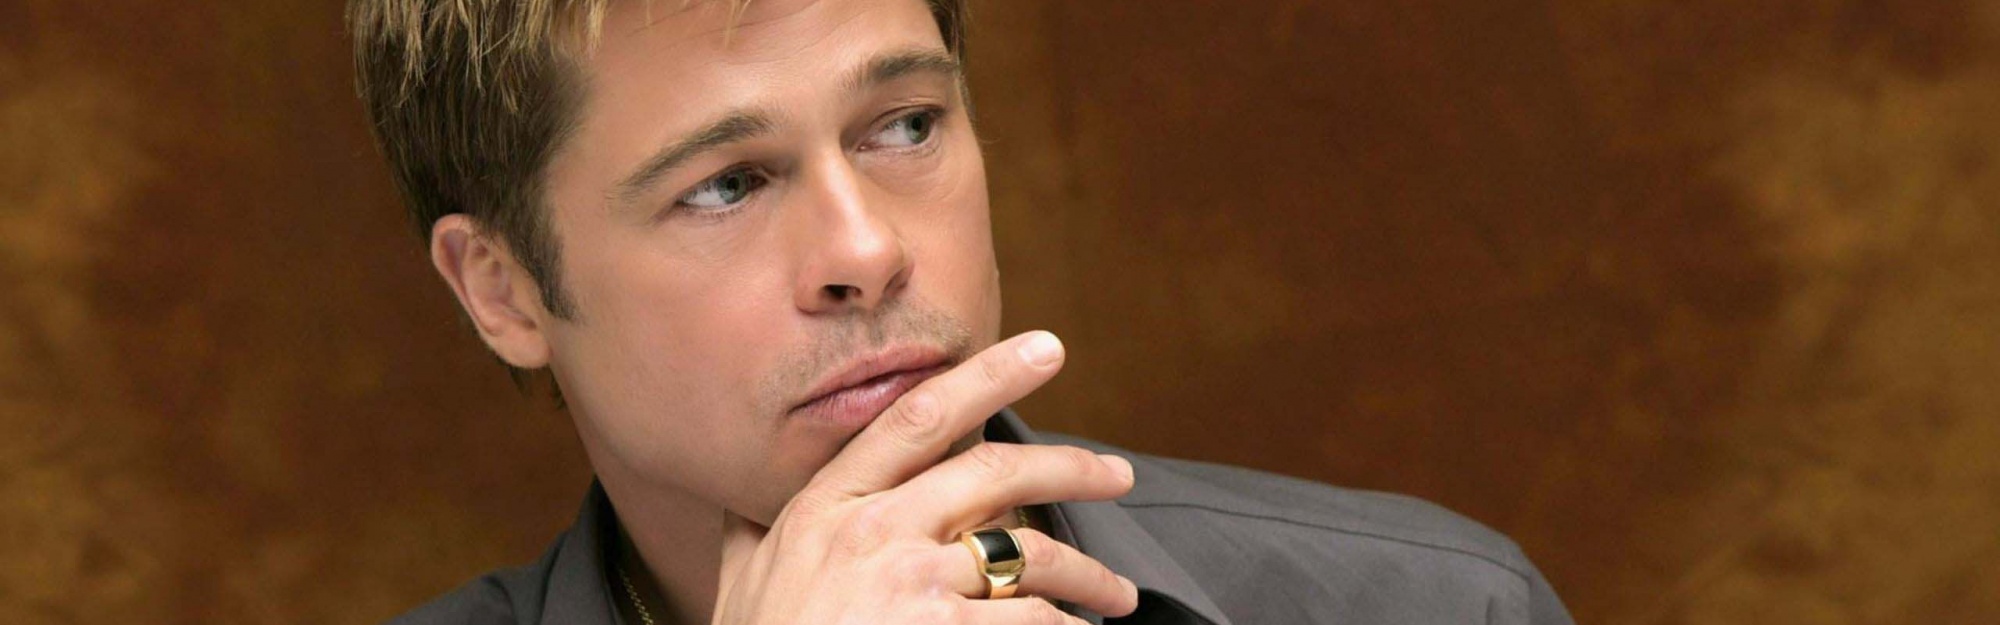 Attractive Brad Pitt Male Celebrity